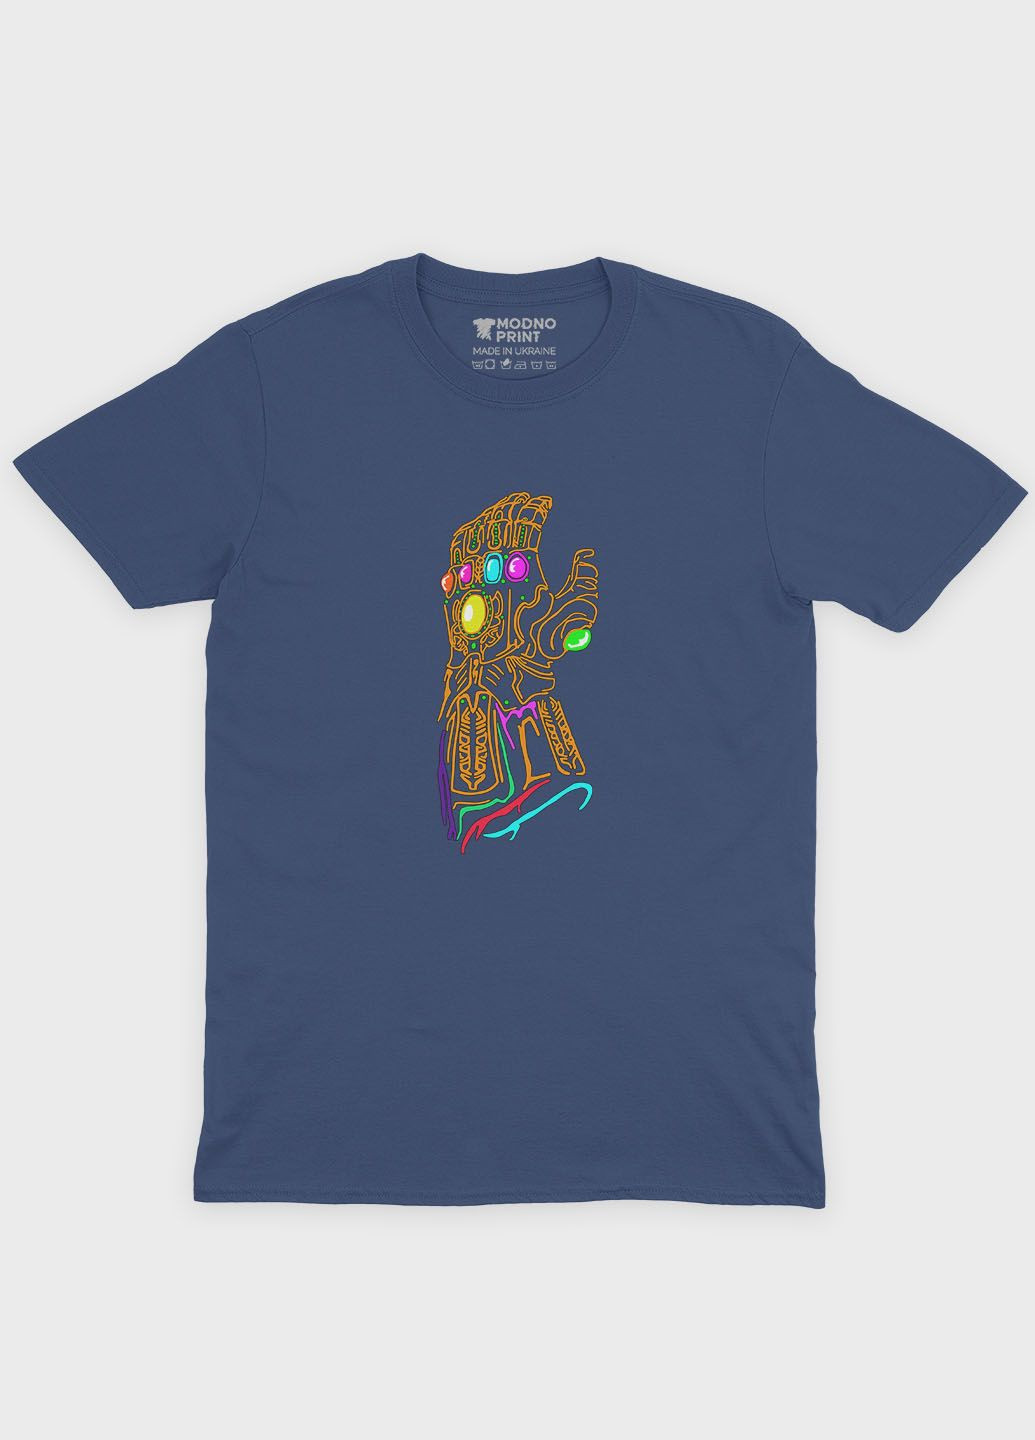 Темно-синя демісезонна футболка для хлопчика з принтом супезлодія - танос (ts001-1-nav-006-019-014-b) Modno